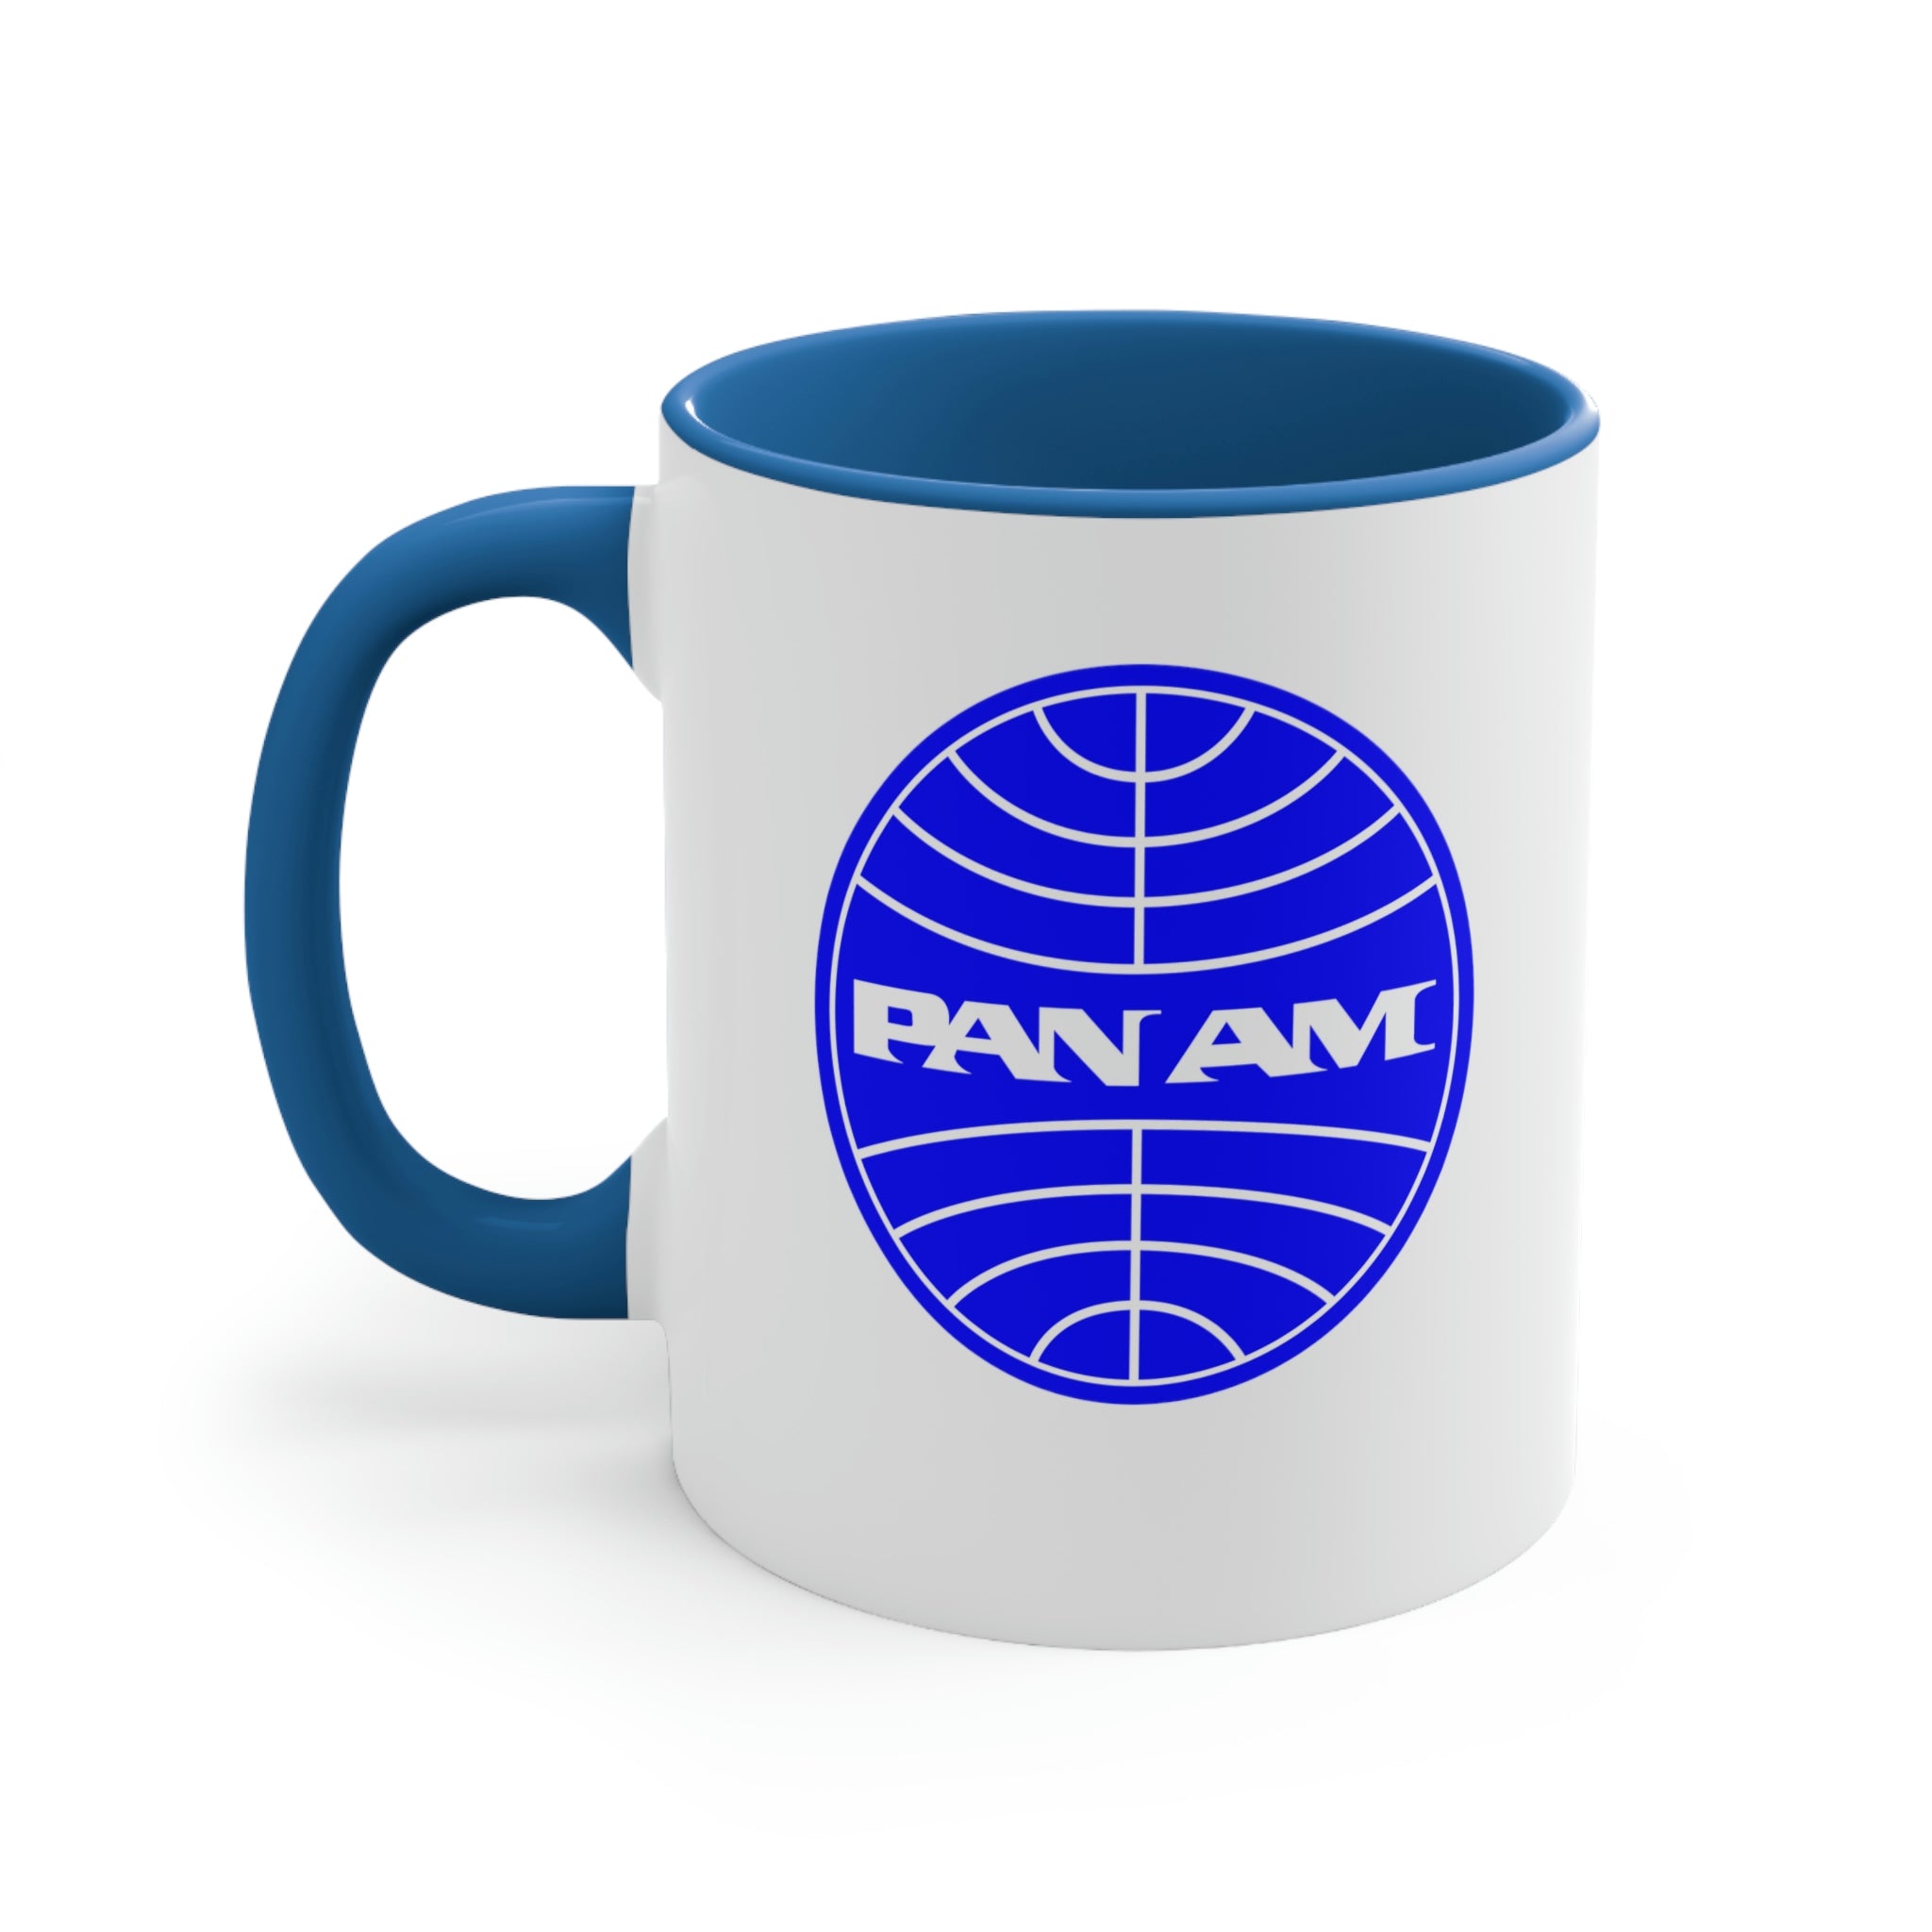 Pan Am Coffee Mug, 11oz